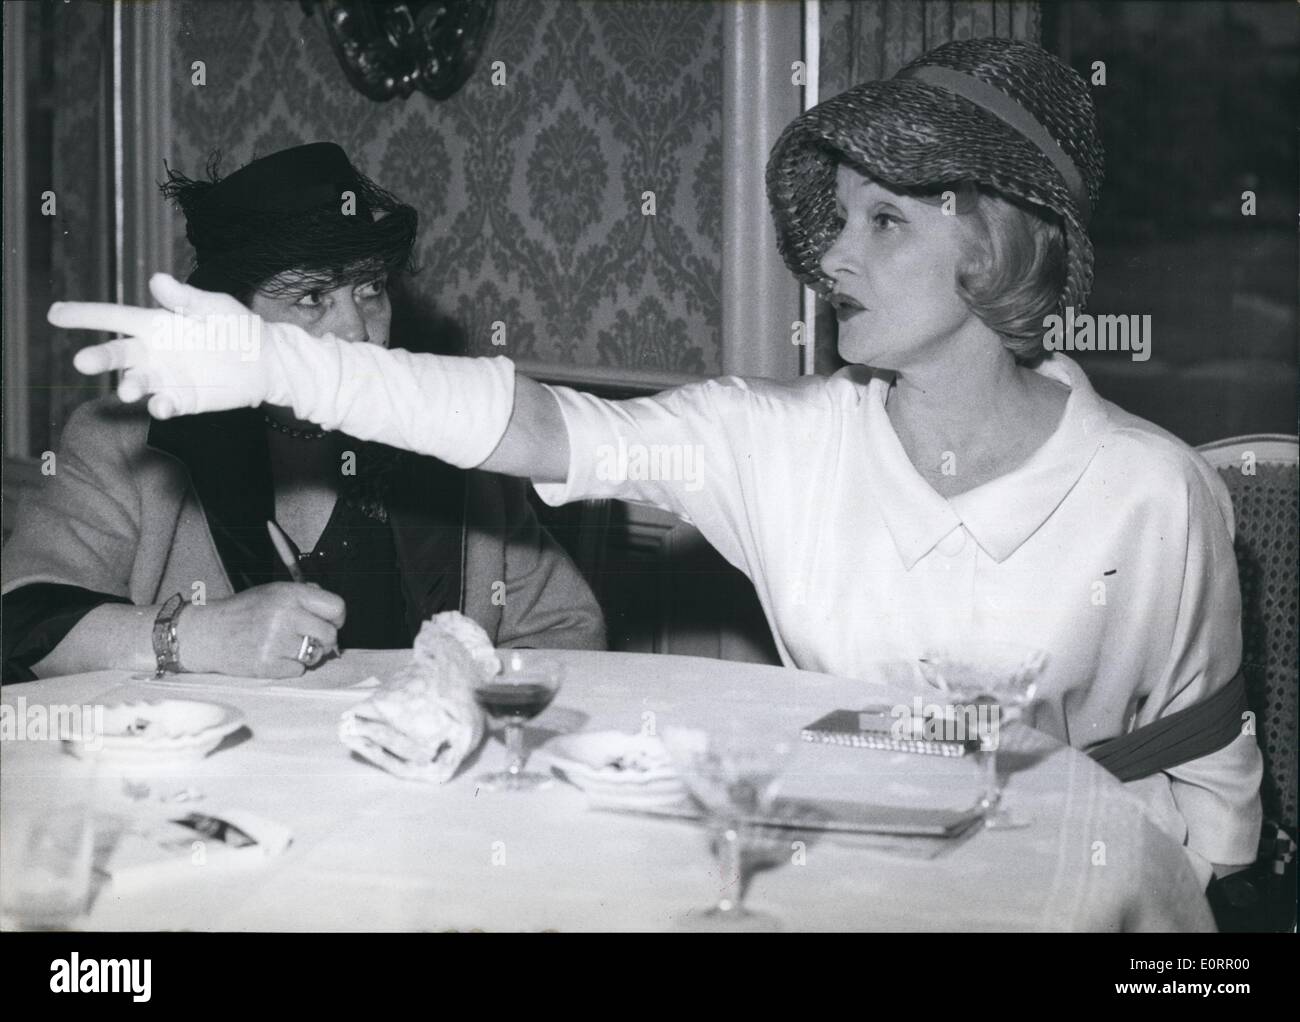 Mai 05, 1960 - Marlene Dietrich à Munich : Avec une sombre étroitement lié scarfe autour de son corps afin de garder son épaule blessée de déménagement, Marlene Dietrich (Marlene Dietrich) a donné une interview à certains journalistes dans un hôtel de Munich le 26 mai 1960. La capitale bavaroise a été la dernière étape de sa tournée à travers l'Allemagne. Photo montre Marlene Dietrich au cours de la conférence de presse. Banque D'Images